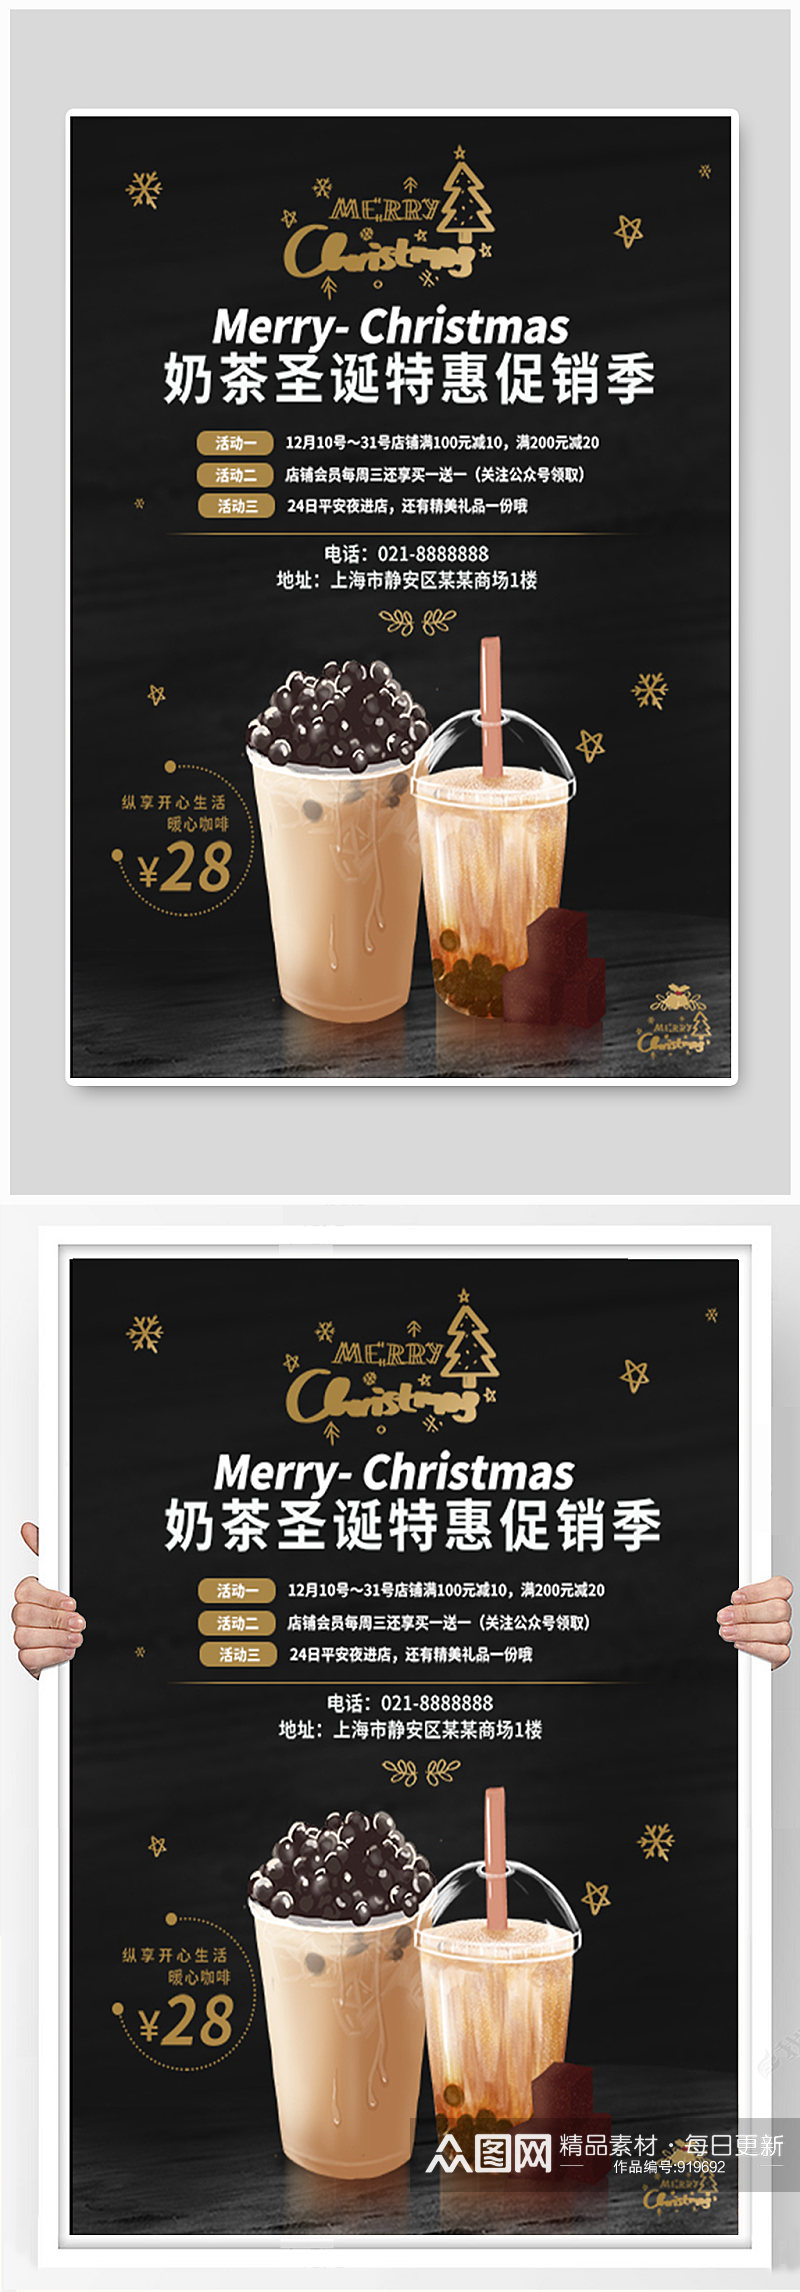 奶茶圣诞促销海报素材